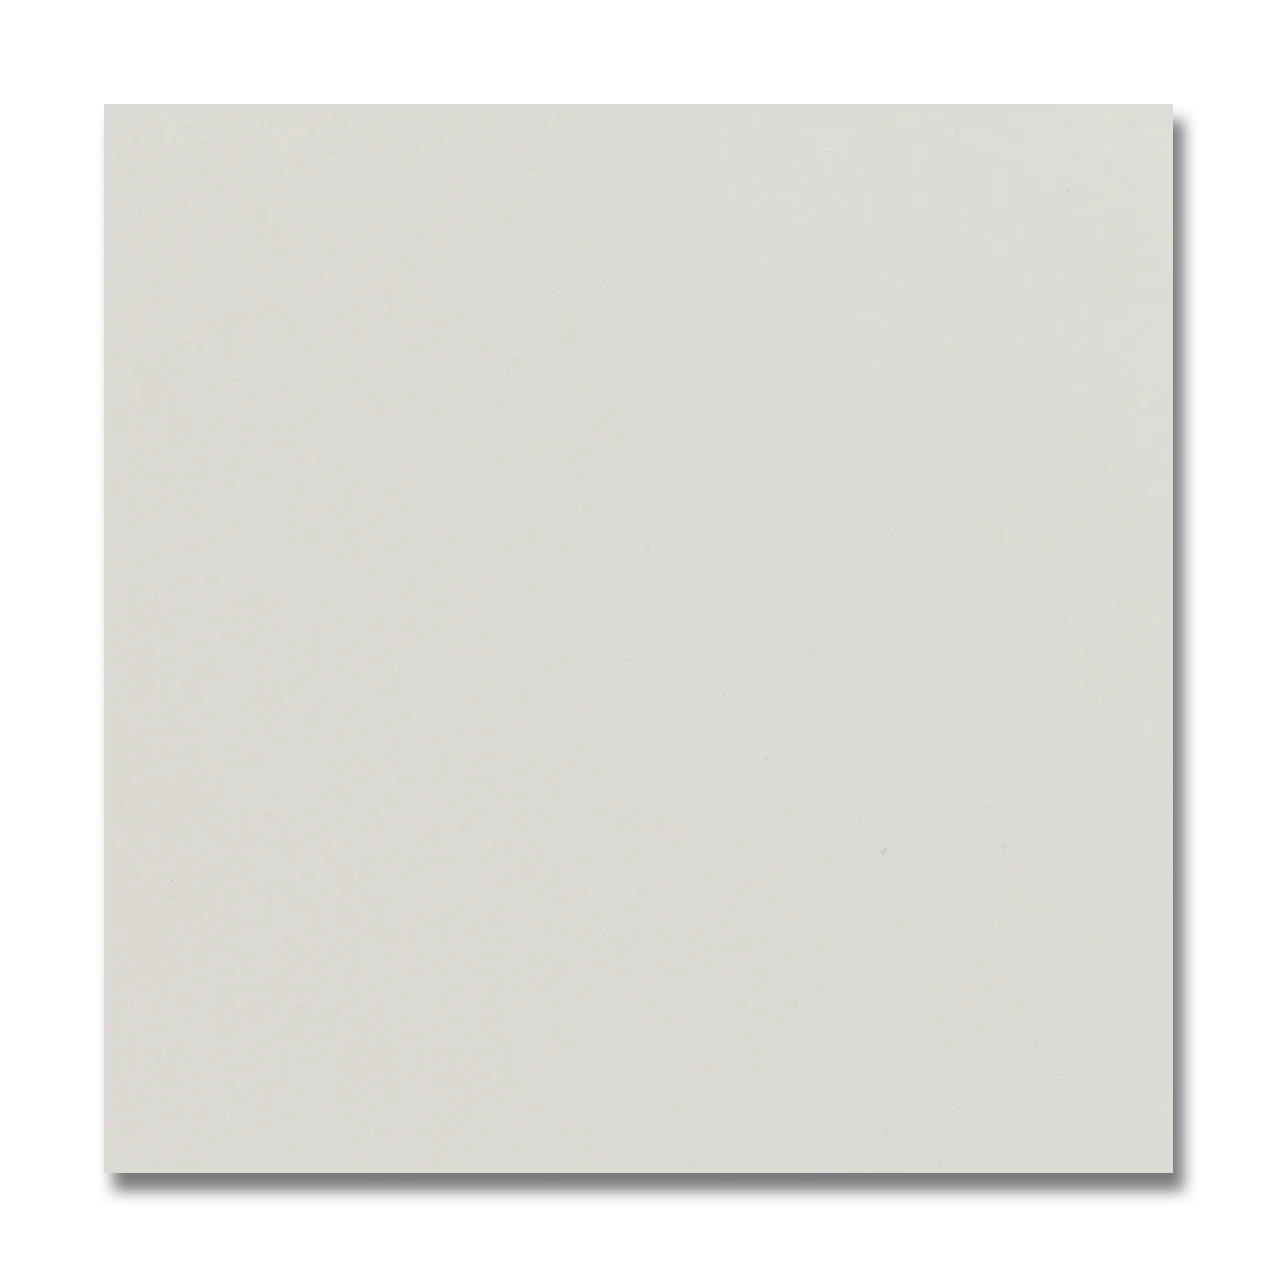 St. Topez Glazed Ceramic Wall Tile 5”x5” Blanco